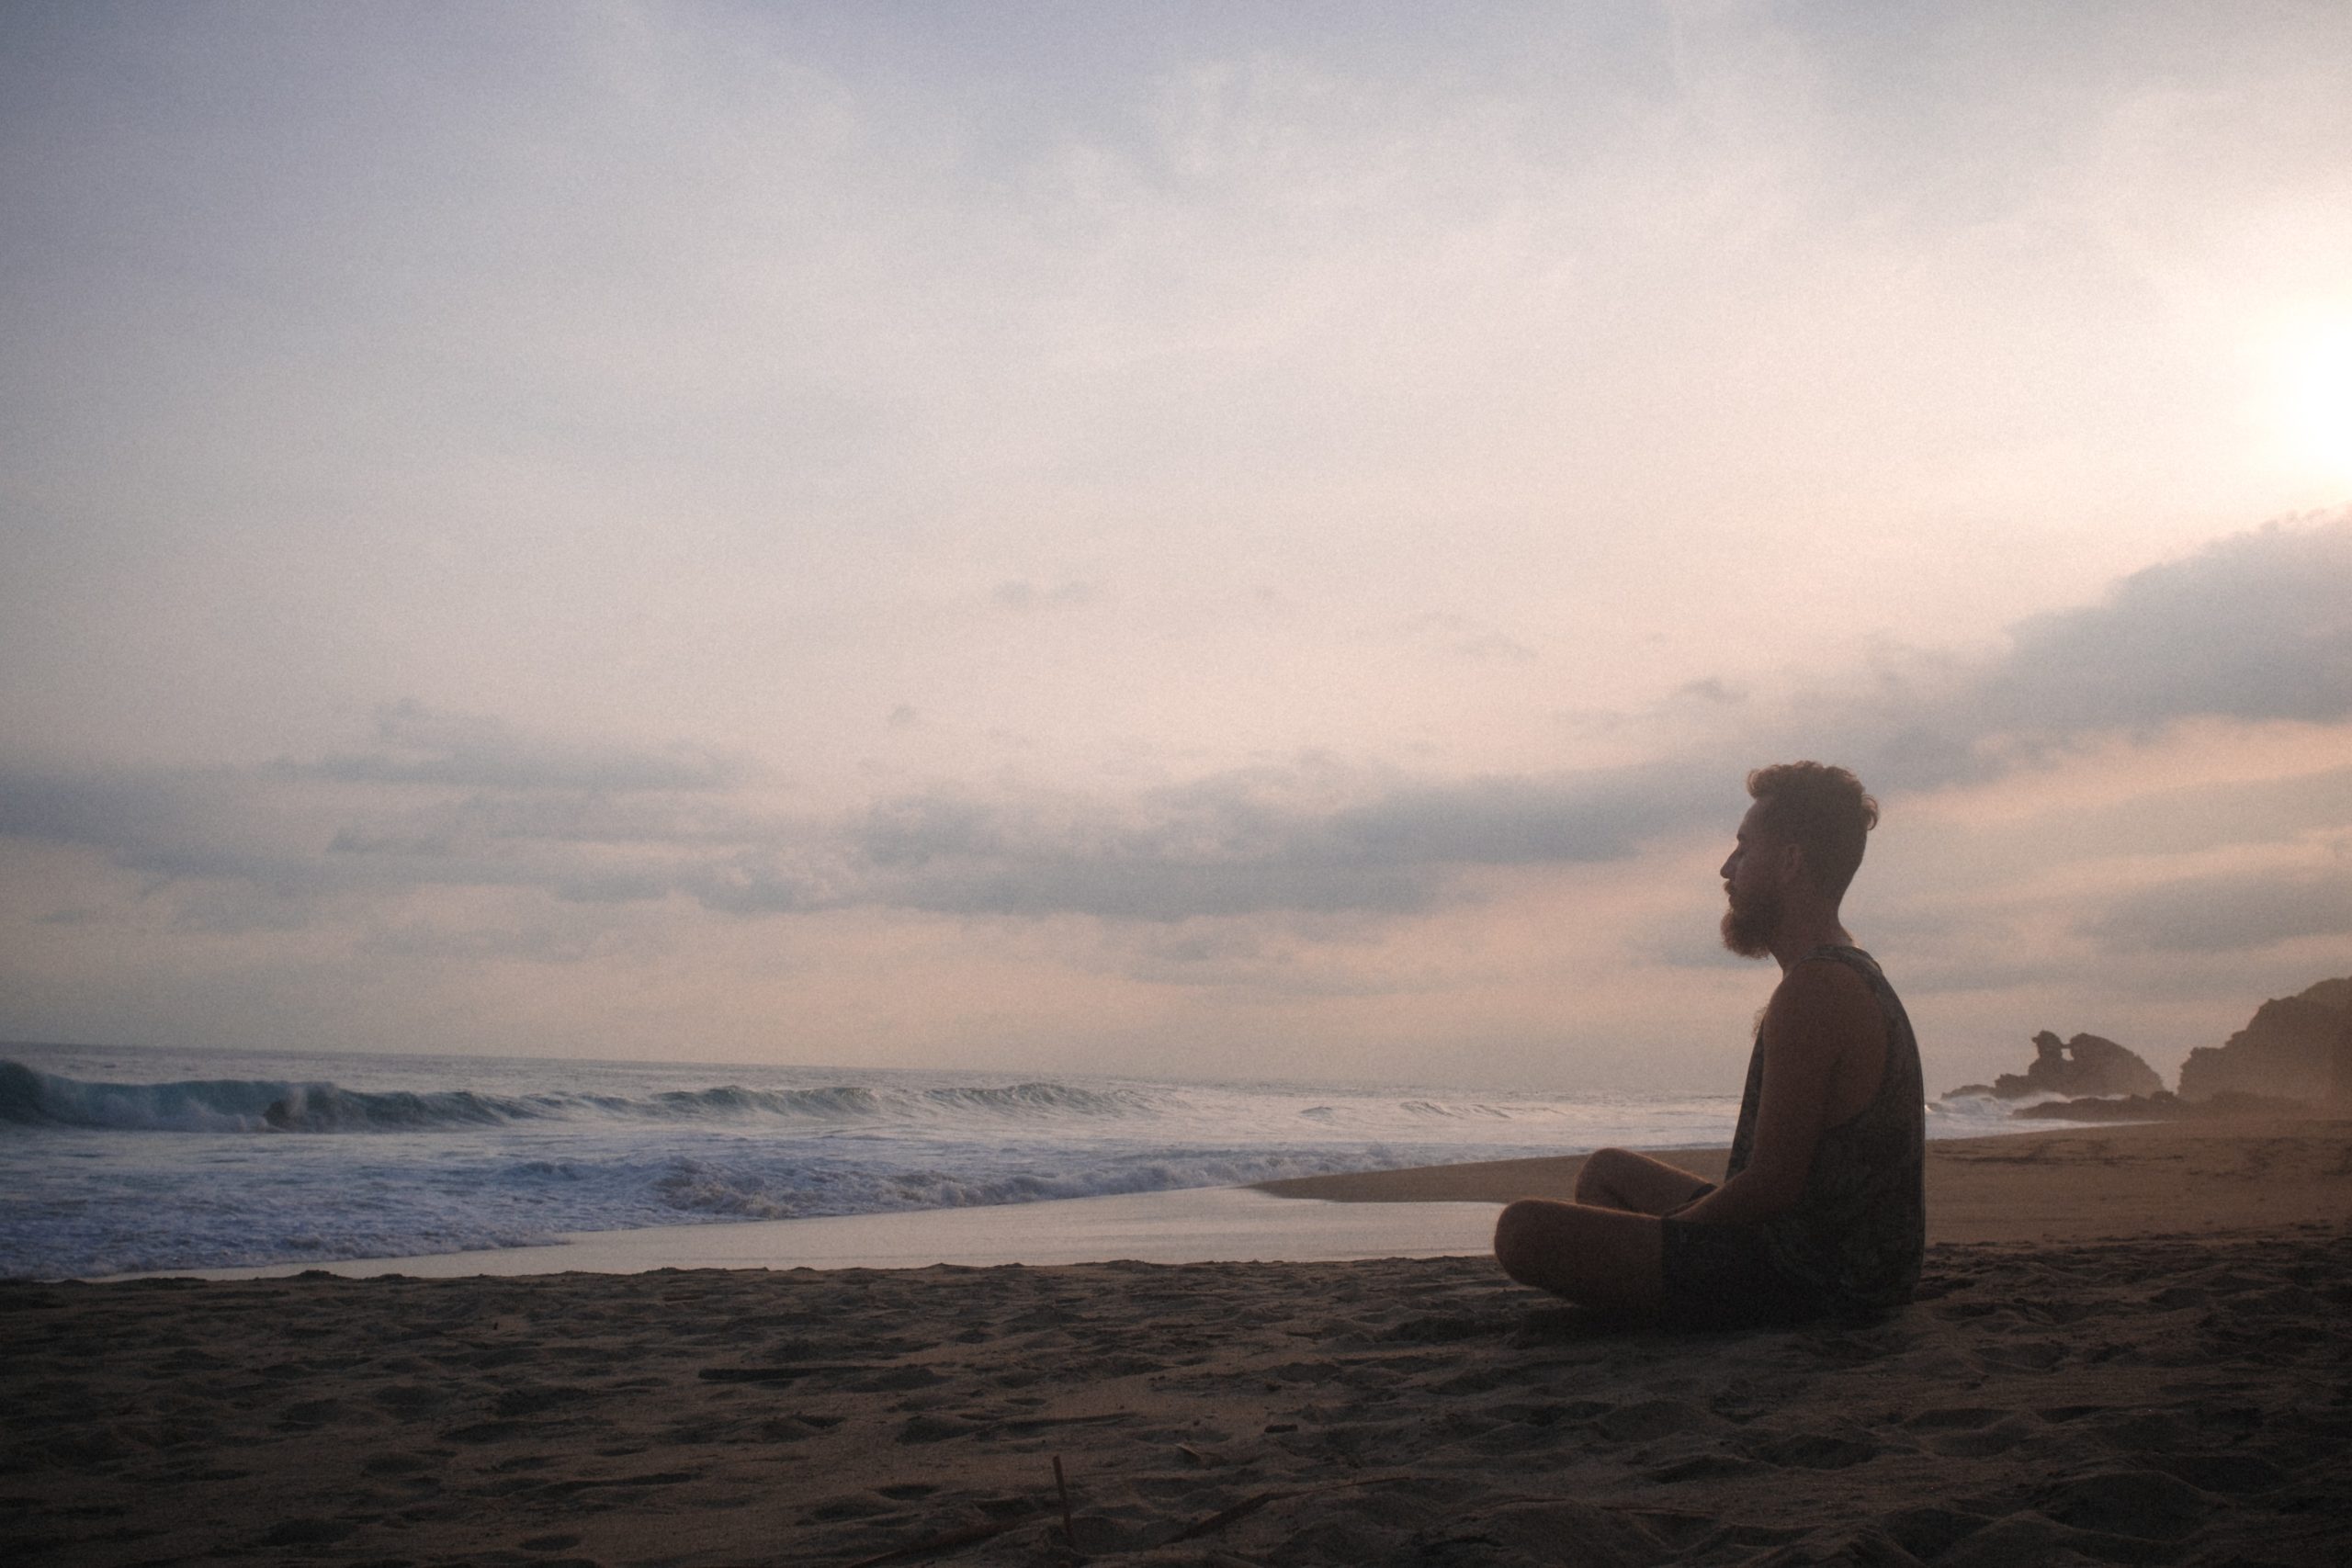 A man sitting on a beach meditating.